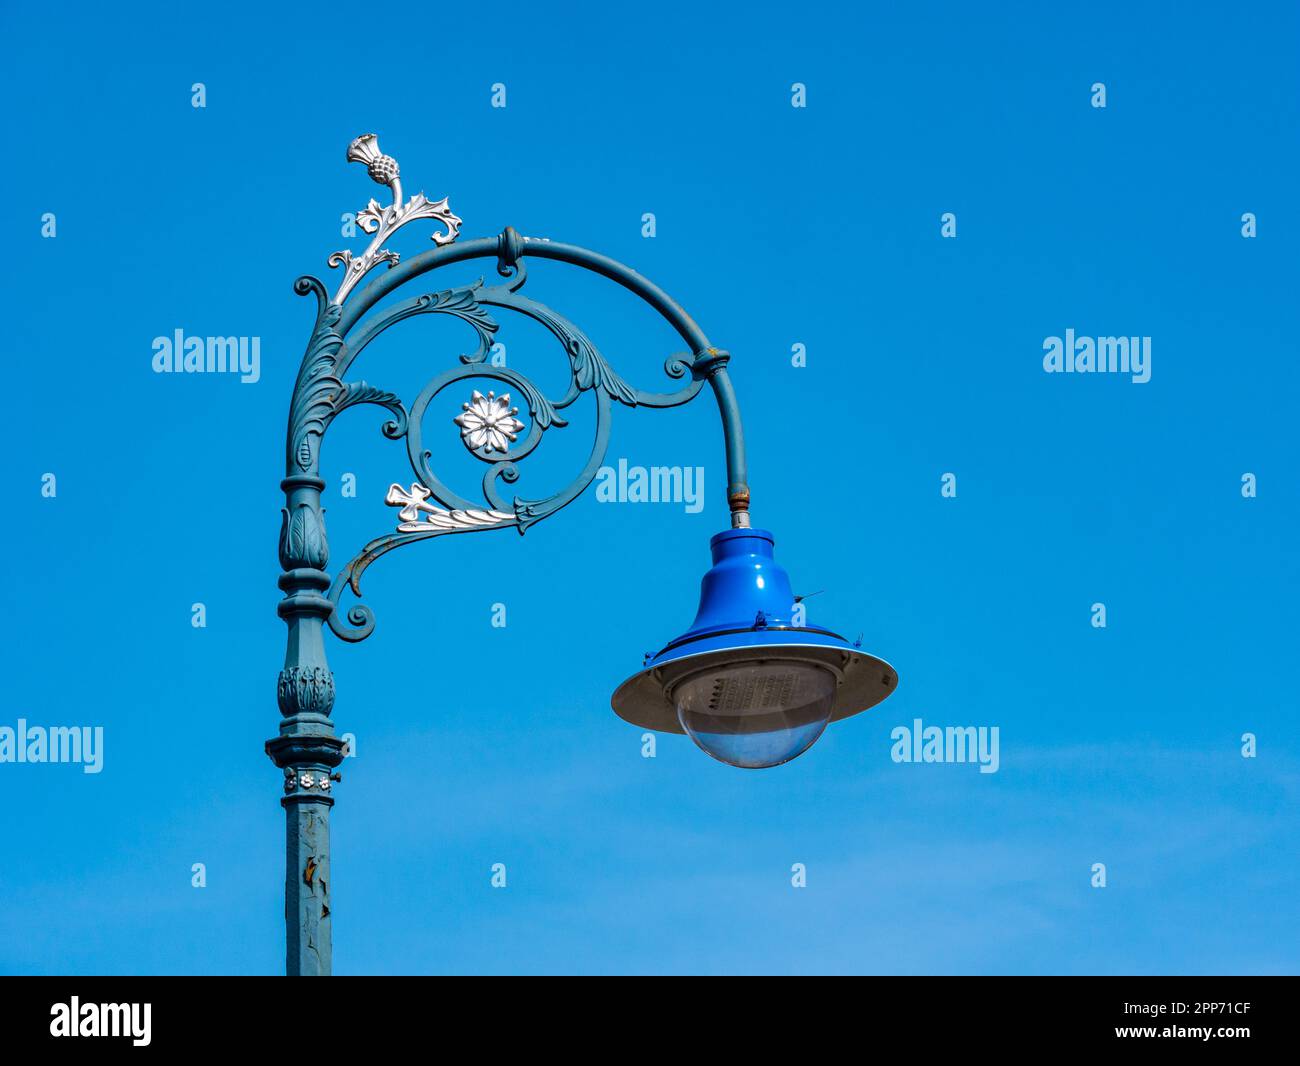 Nahaufnahme der dekorativen altmodischen Straßenbeleuchtung und des blauen Himmels, Leith, Edinburgh, Schottland, Großbritannien Stockfoto